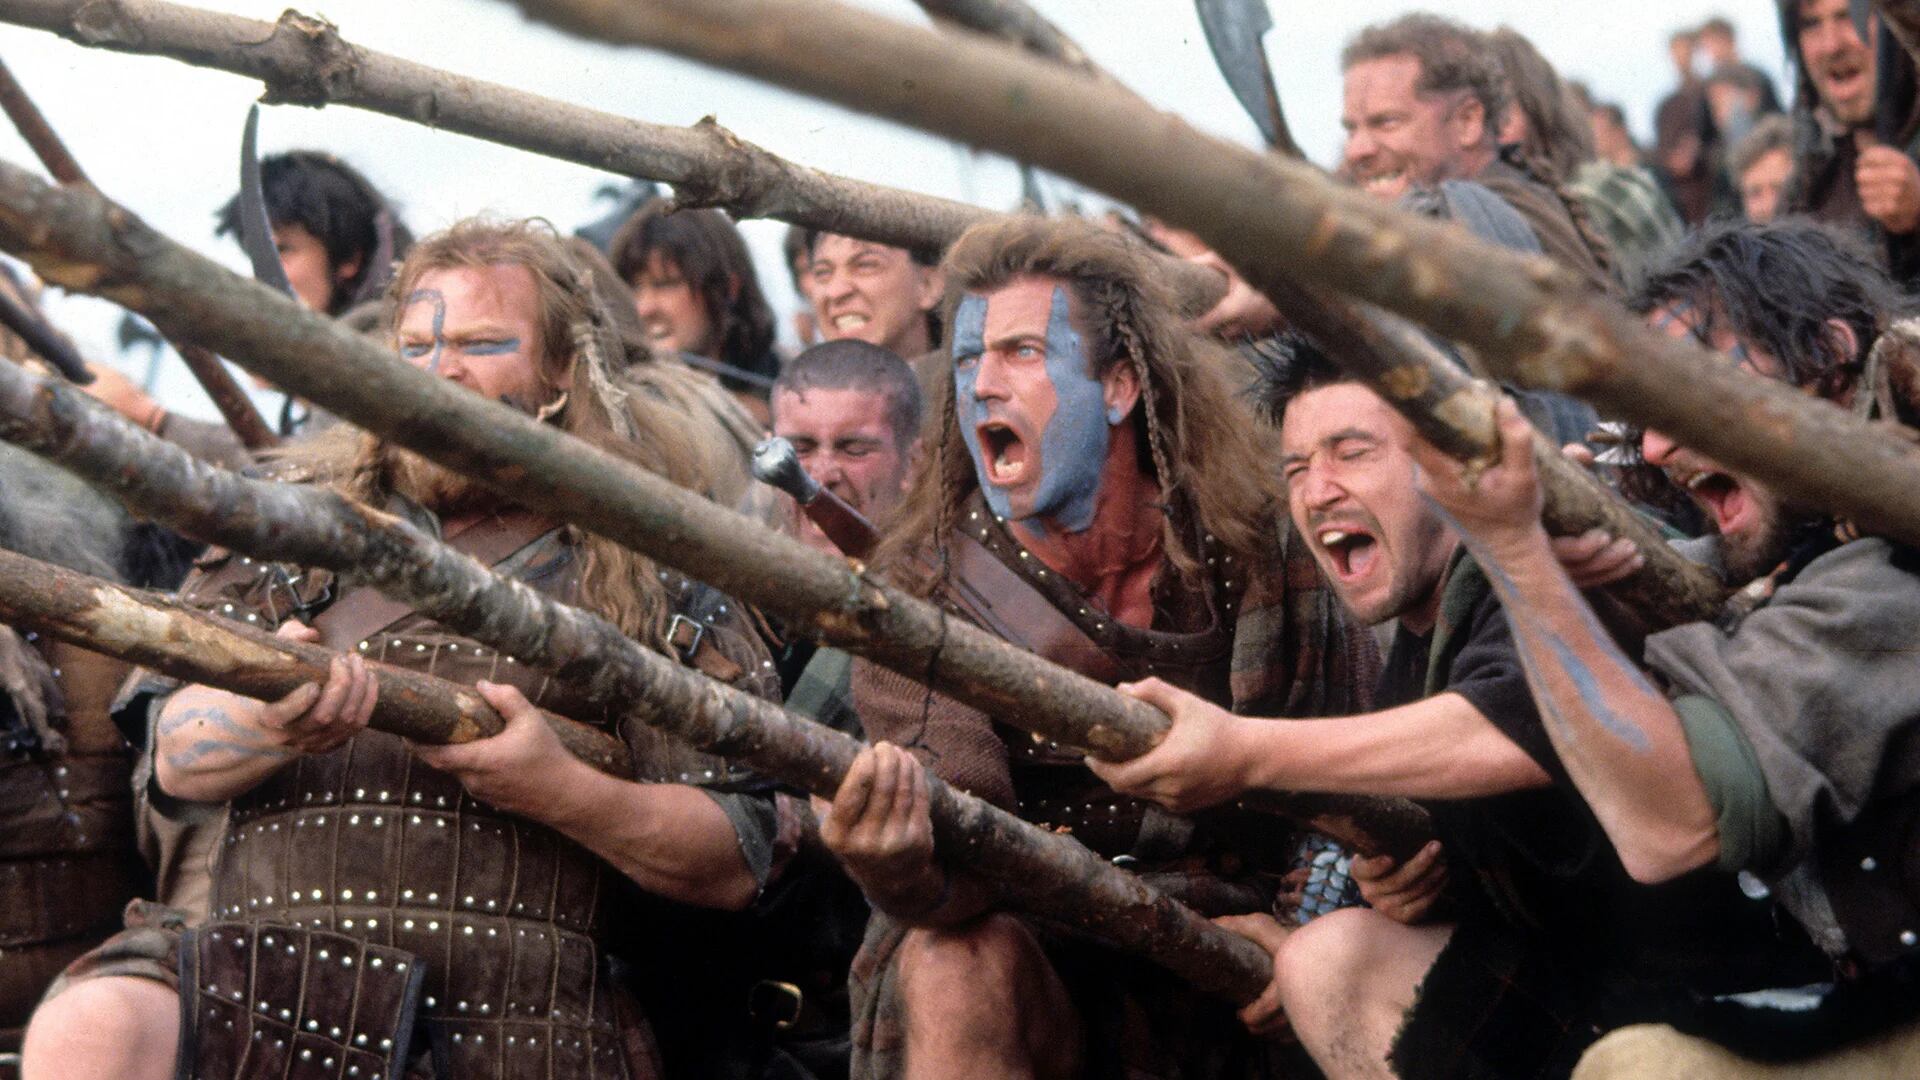 Corazón valiente: los errores históricos, la obsesión de Mel Gibson y la brutal muerte de William Wallace que el filme evitó reflejar